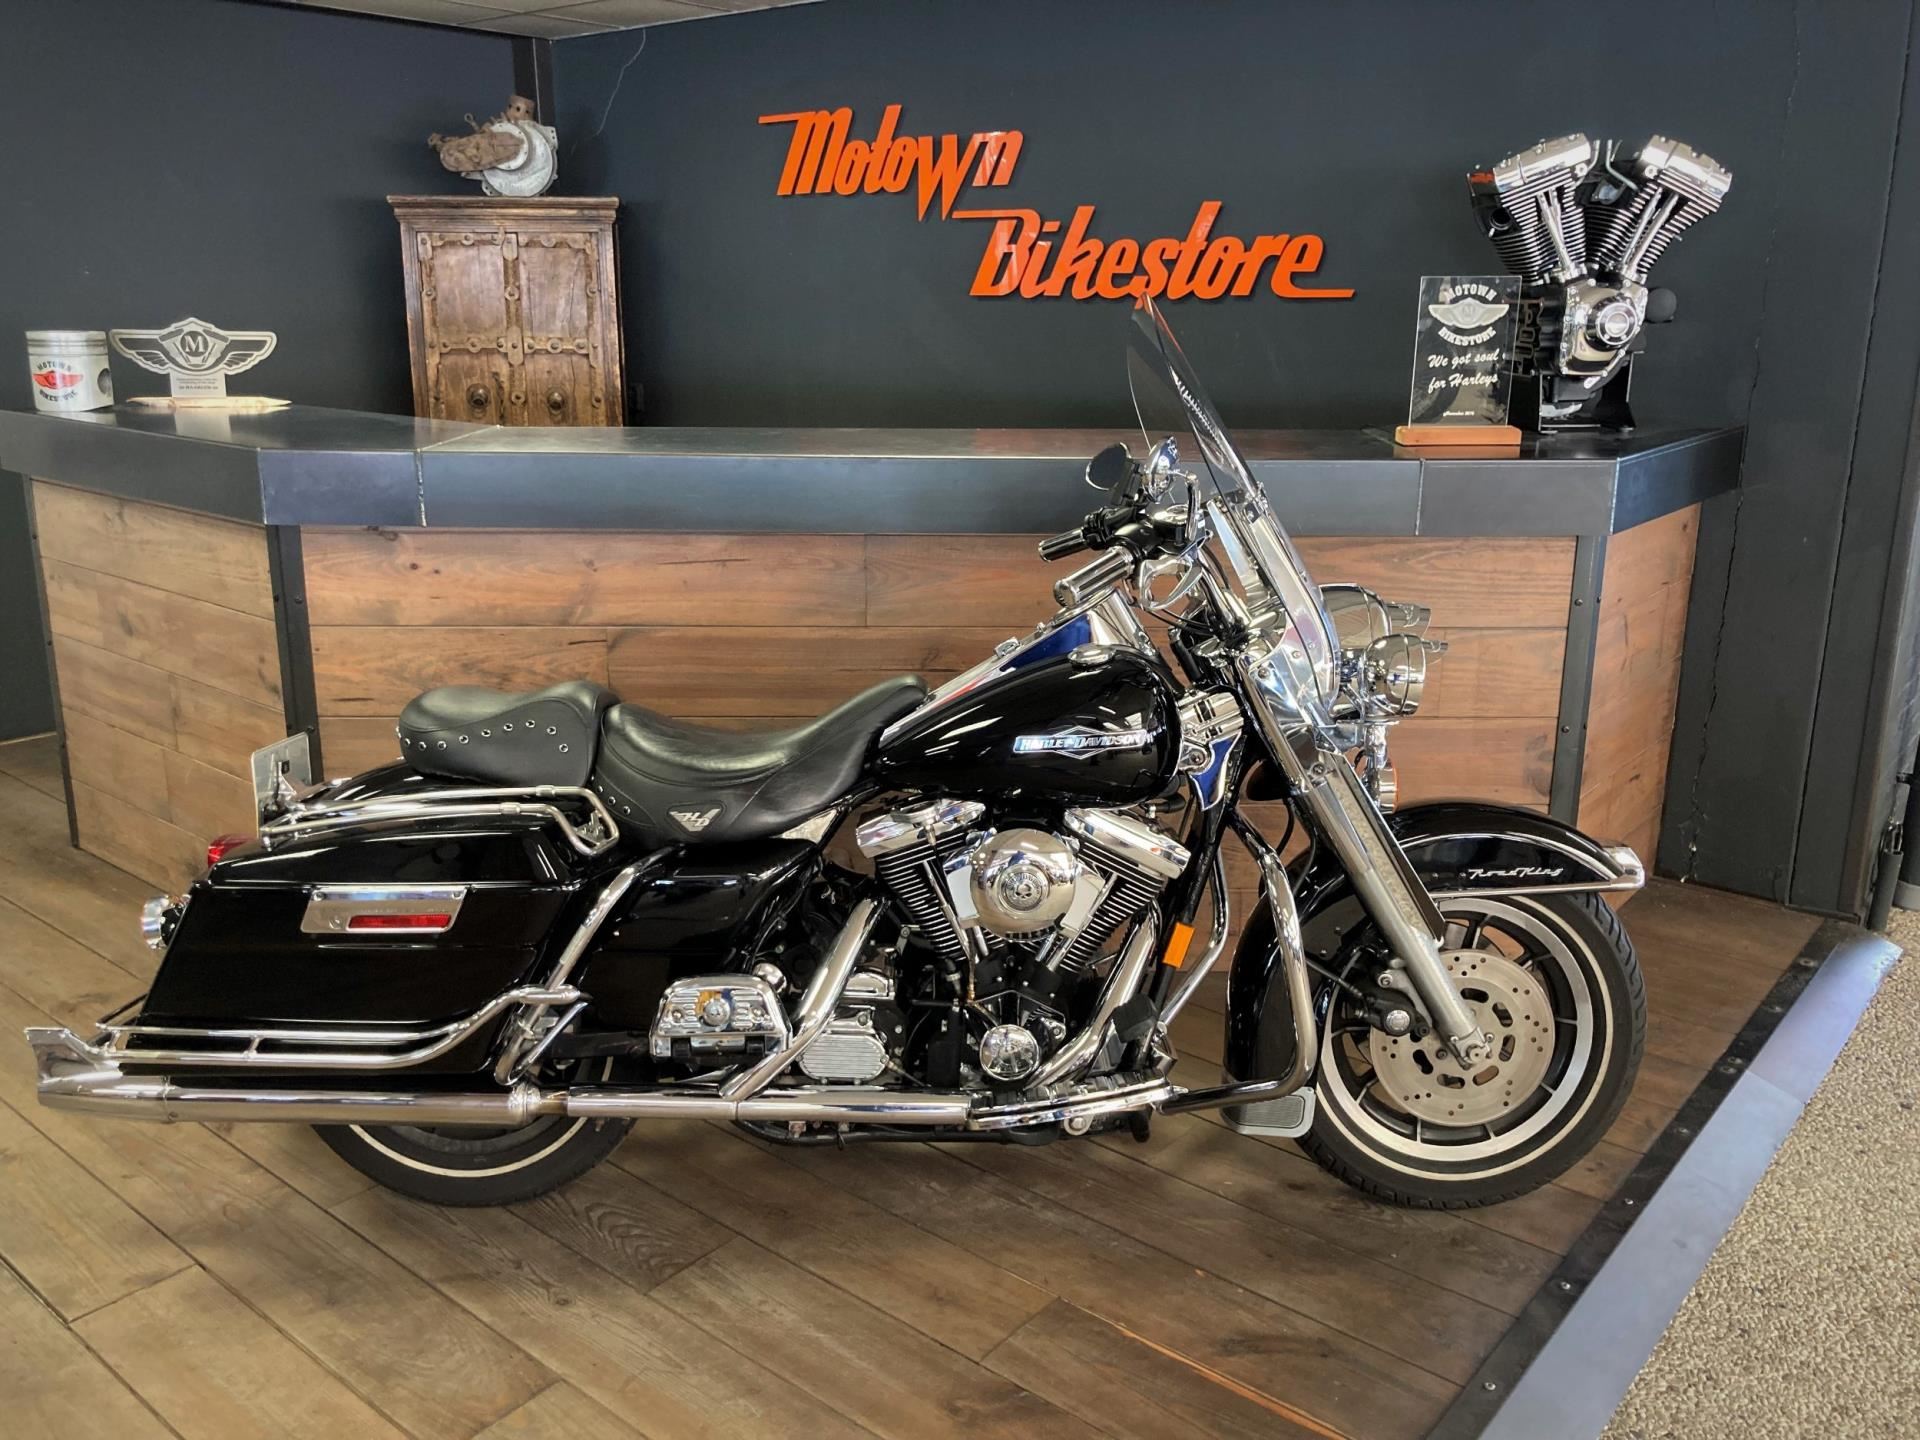 Harley Davidson FLHR Roadking Classic occasion - Motown Bikestore